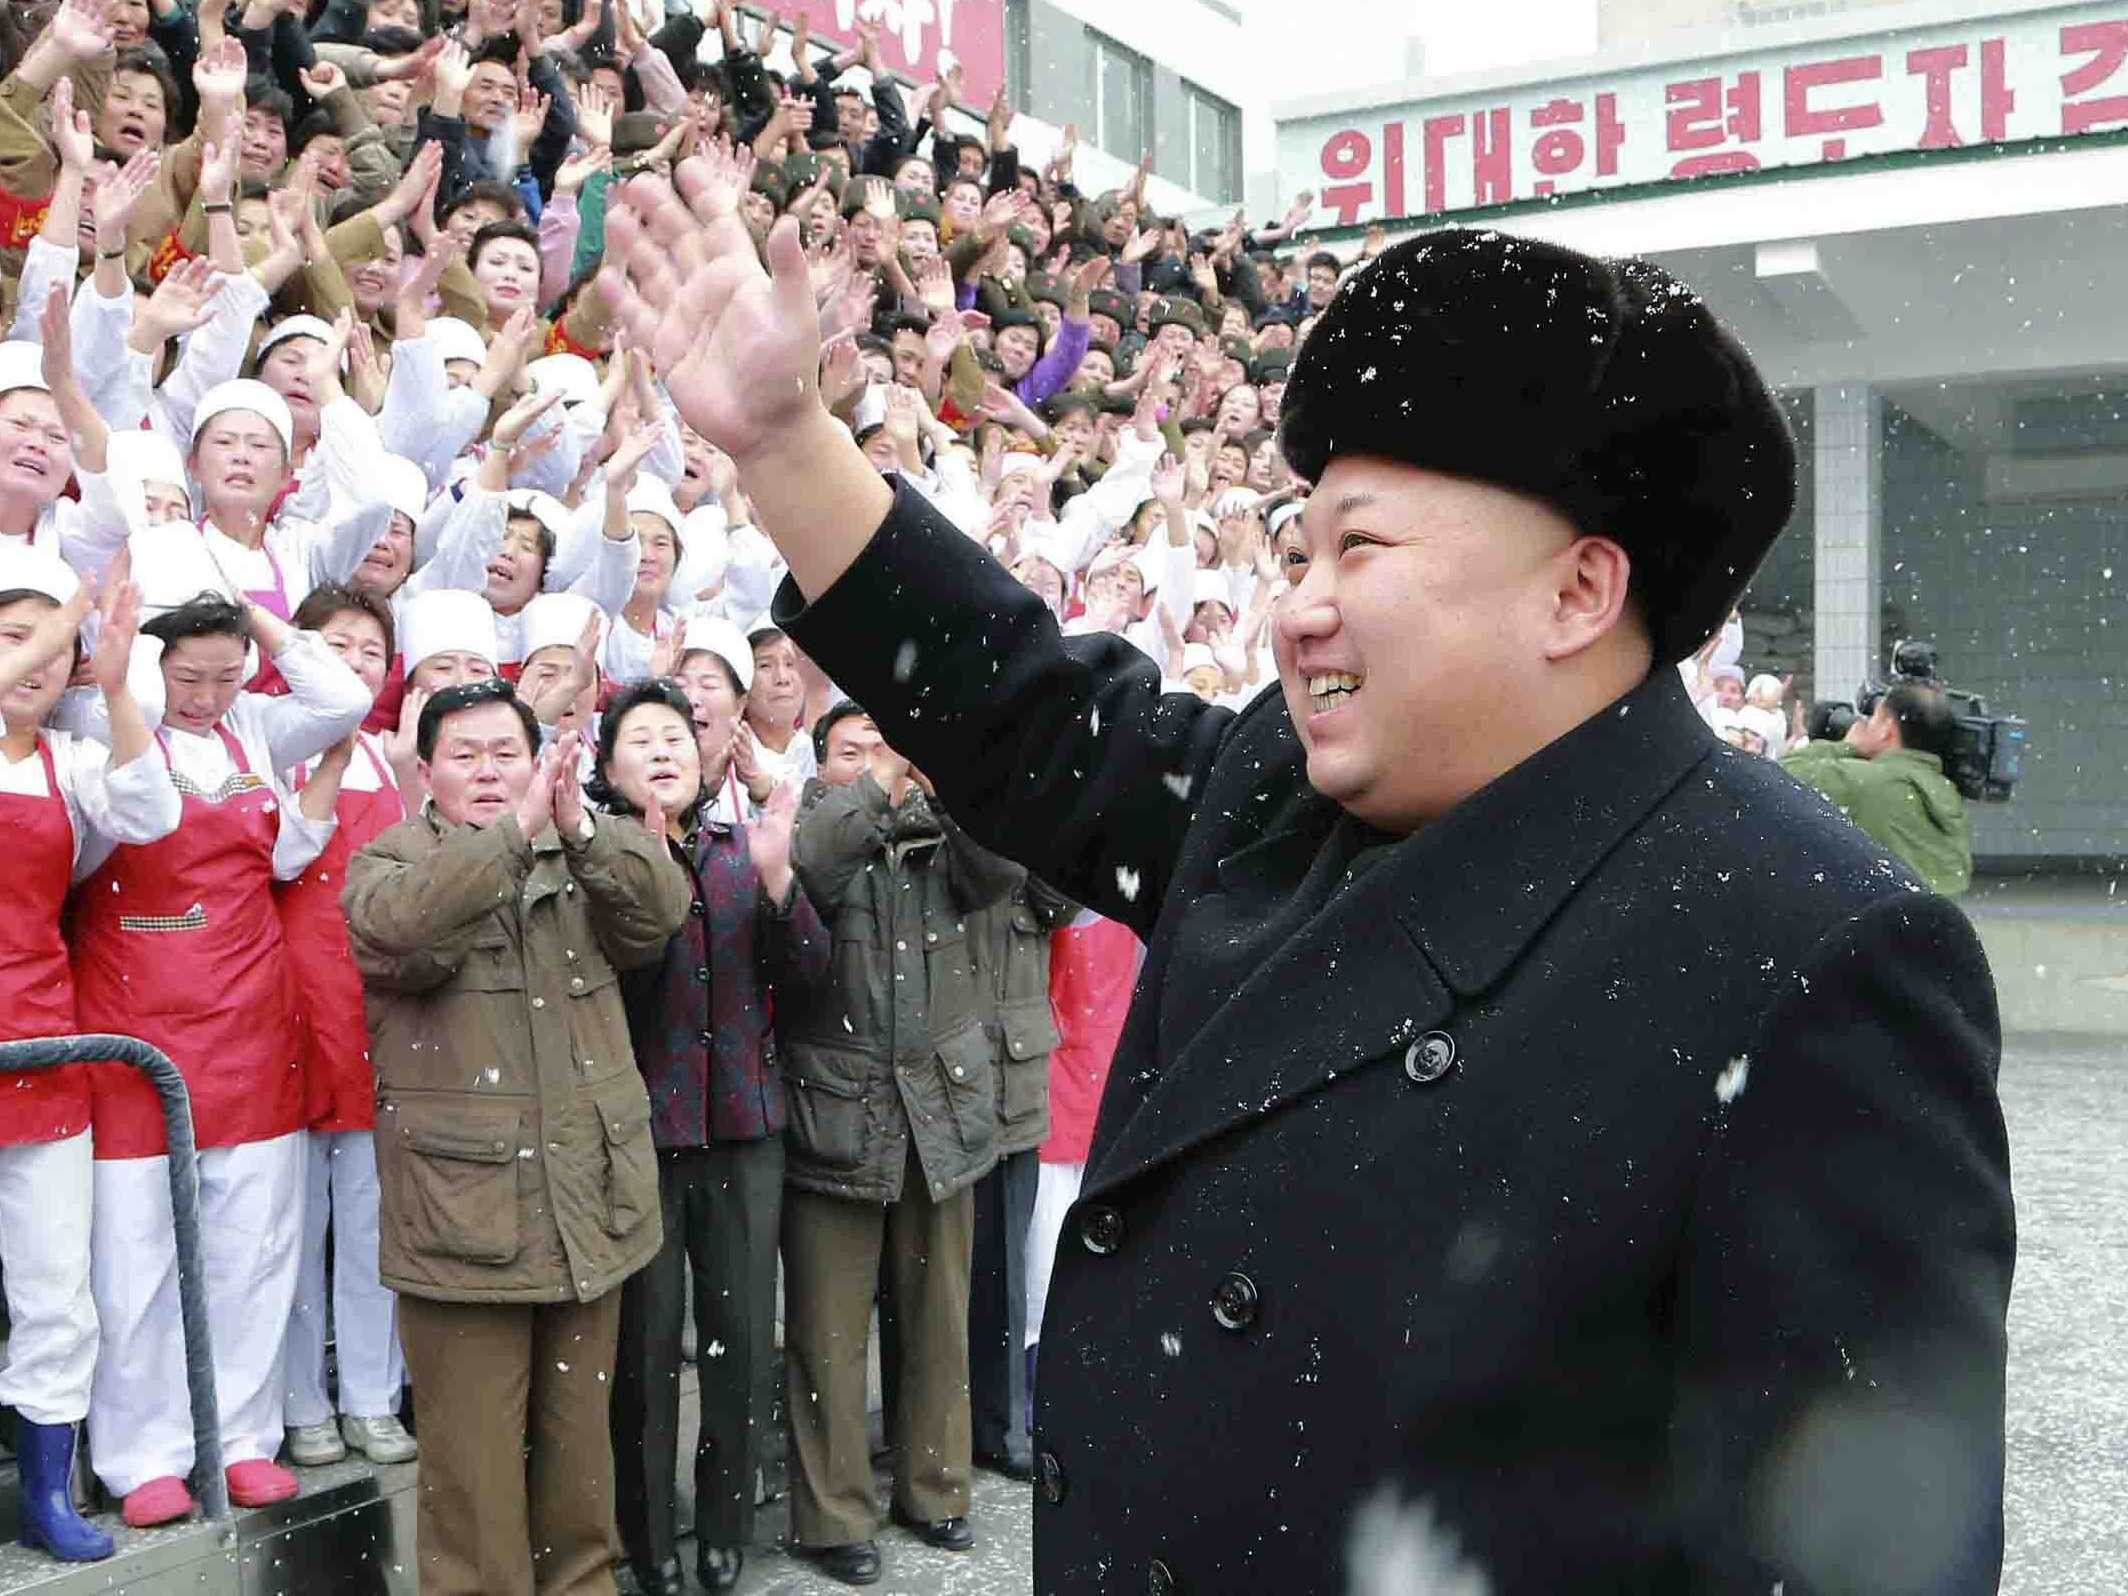 8 شائعات غريبة وطريفة حول زعيم كوريا الشمالية